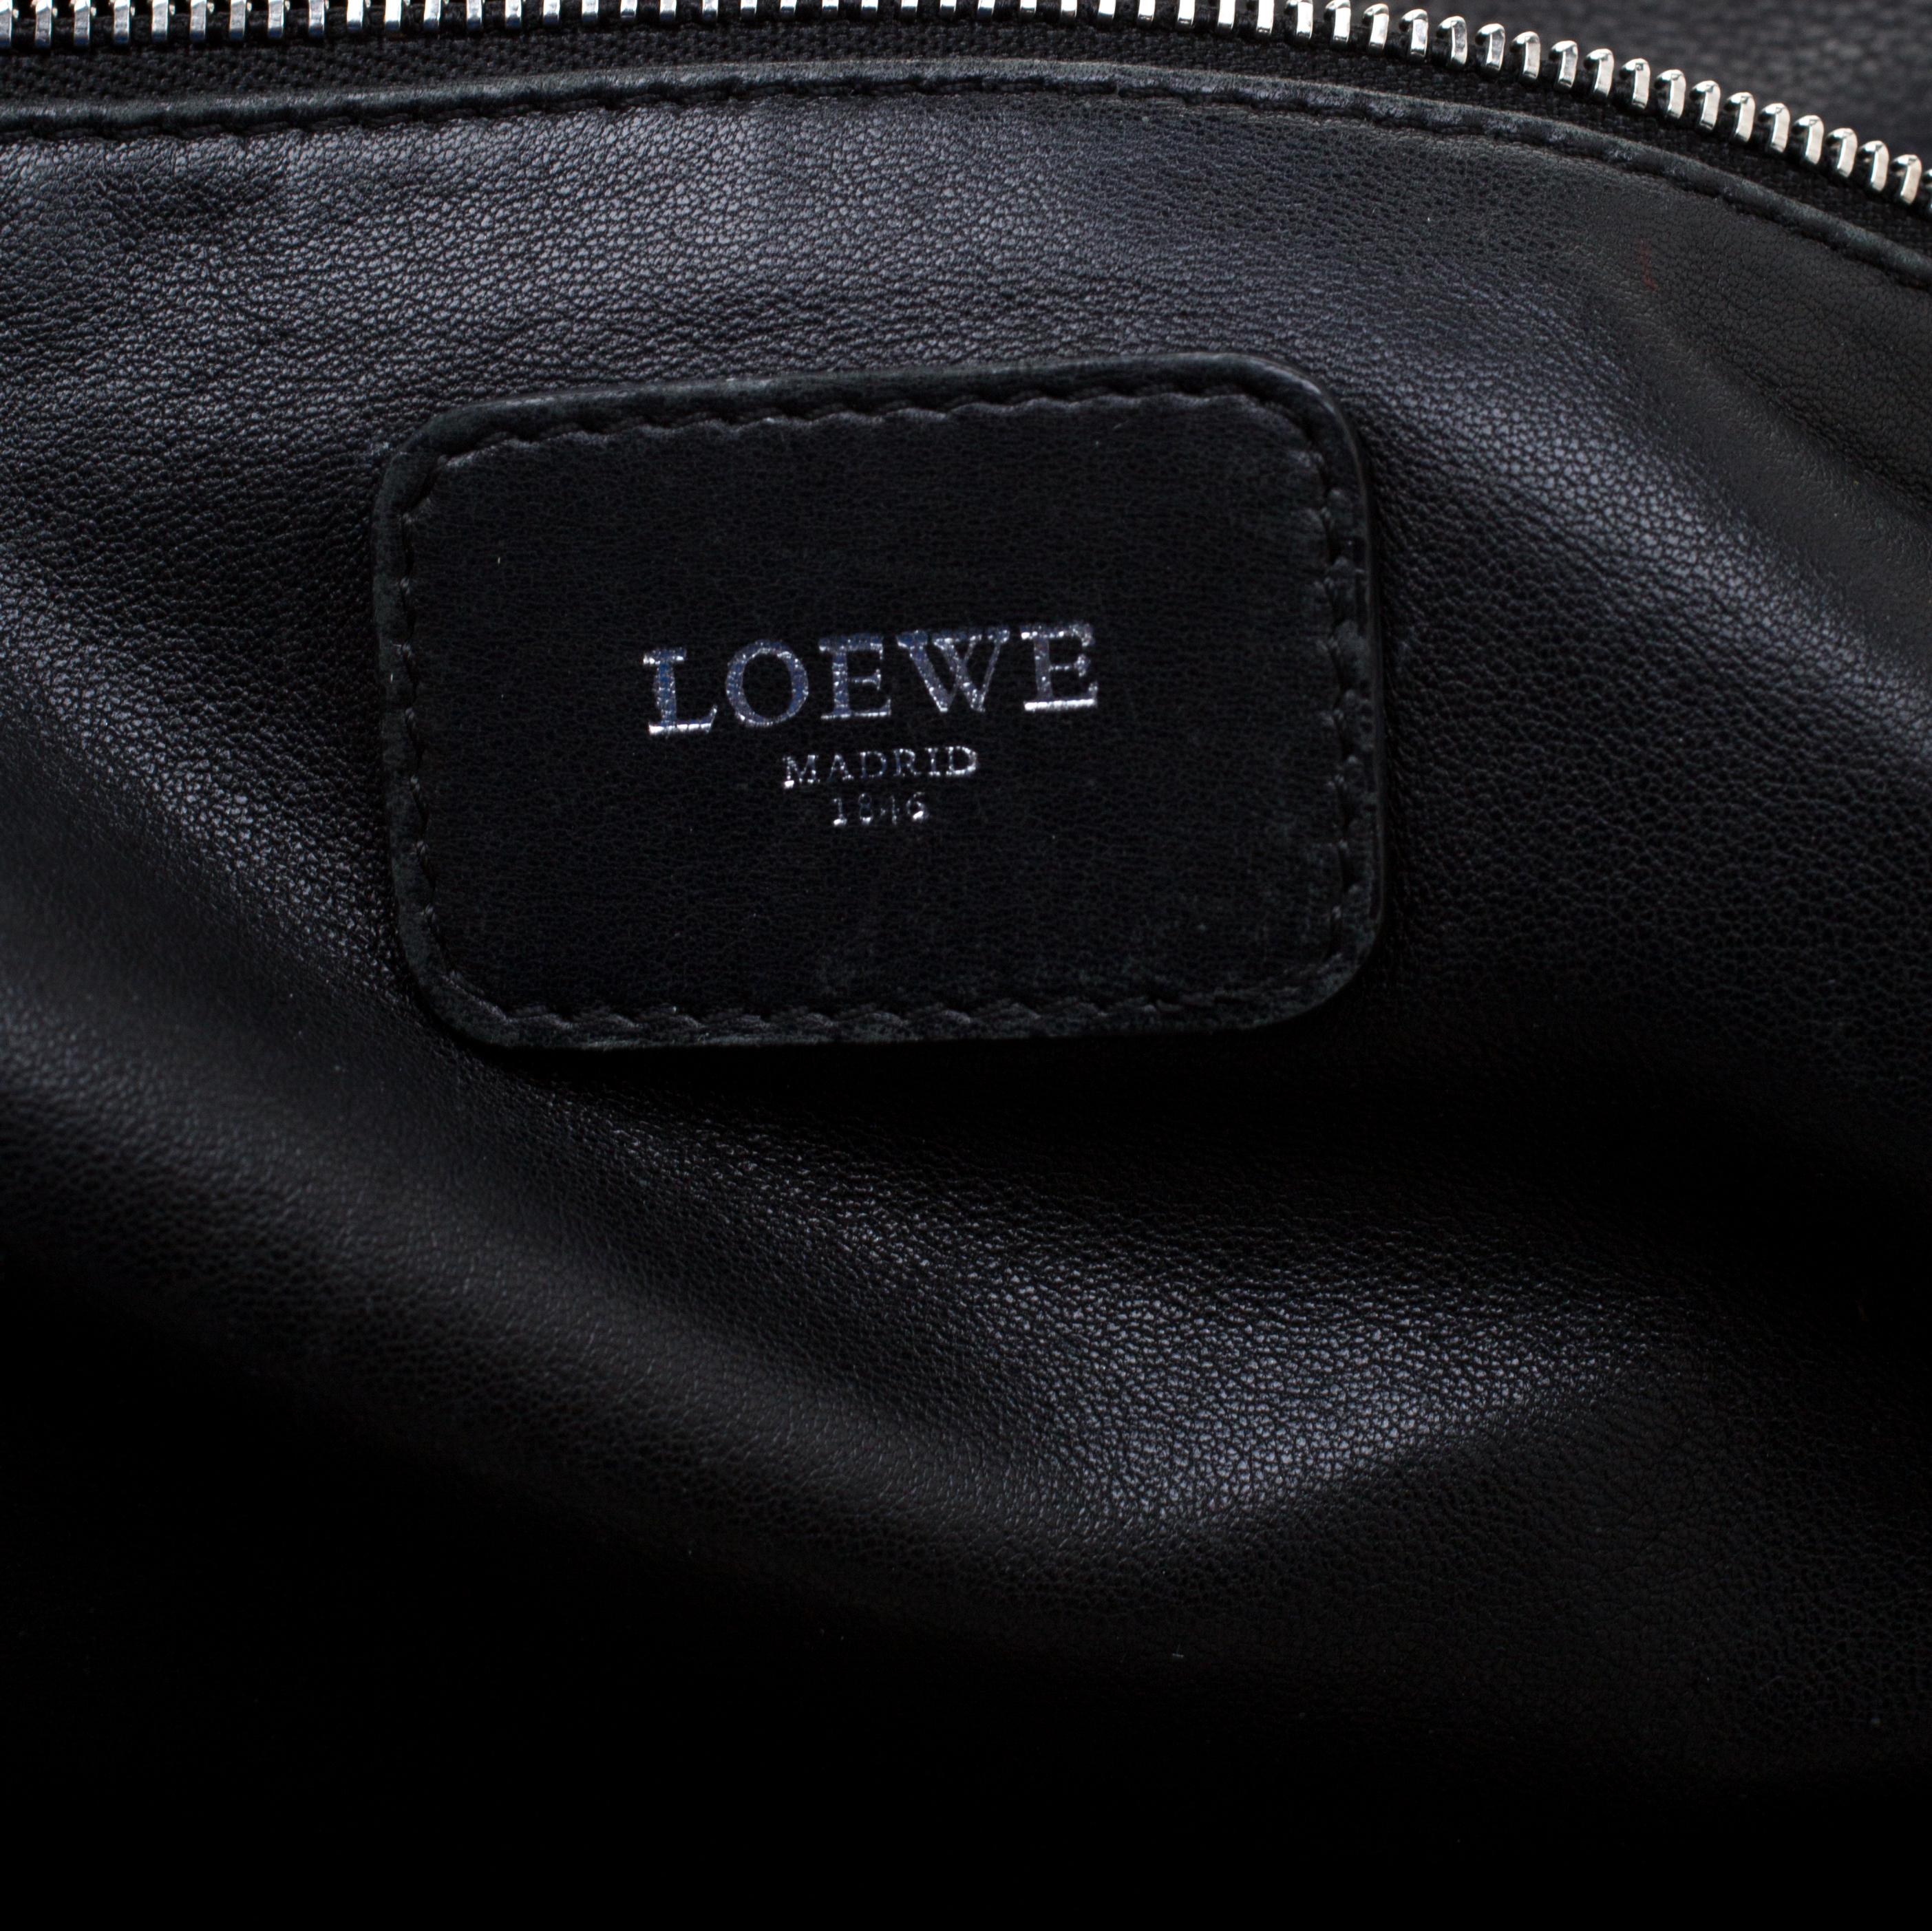 Women's Loewe Black Leather Amazona Satchel Bag